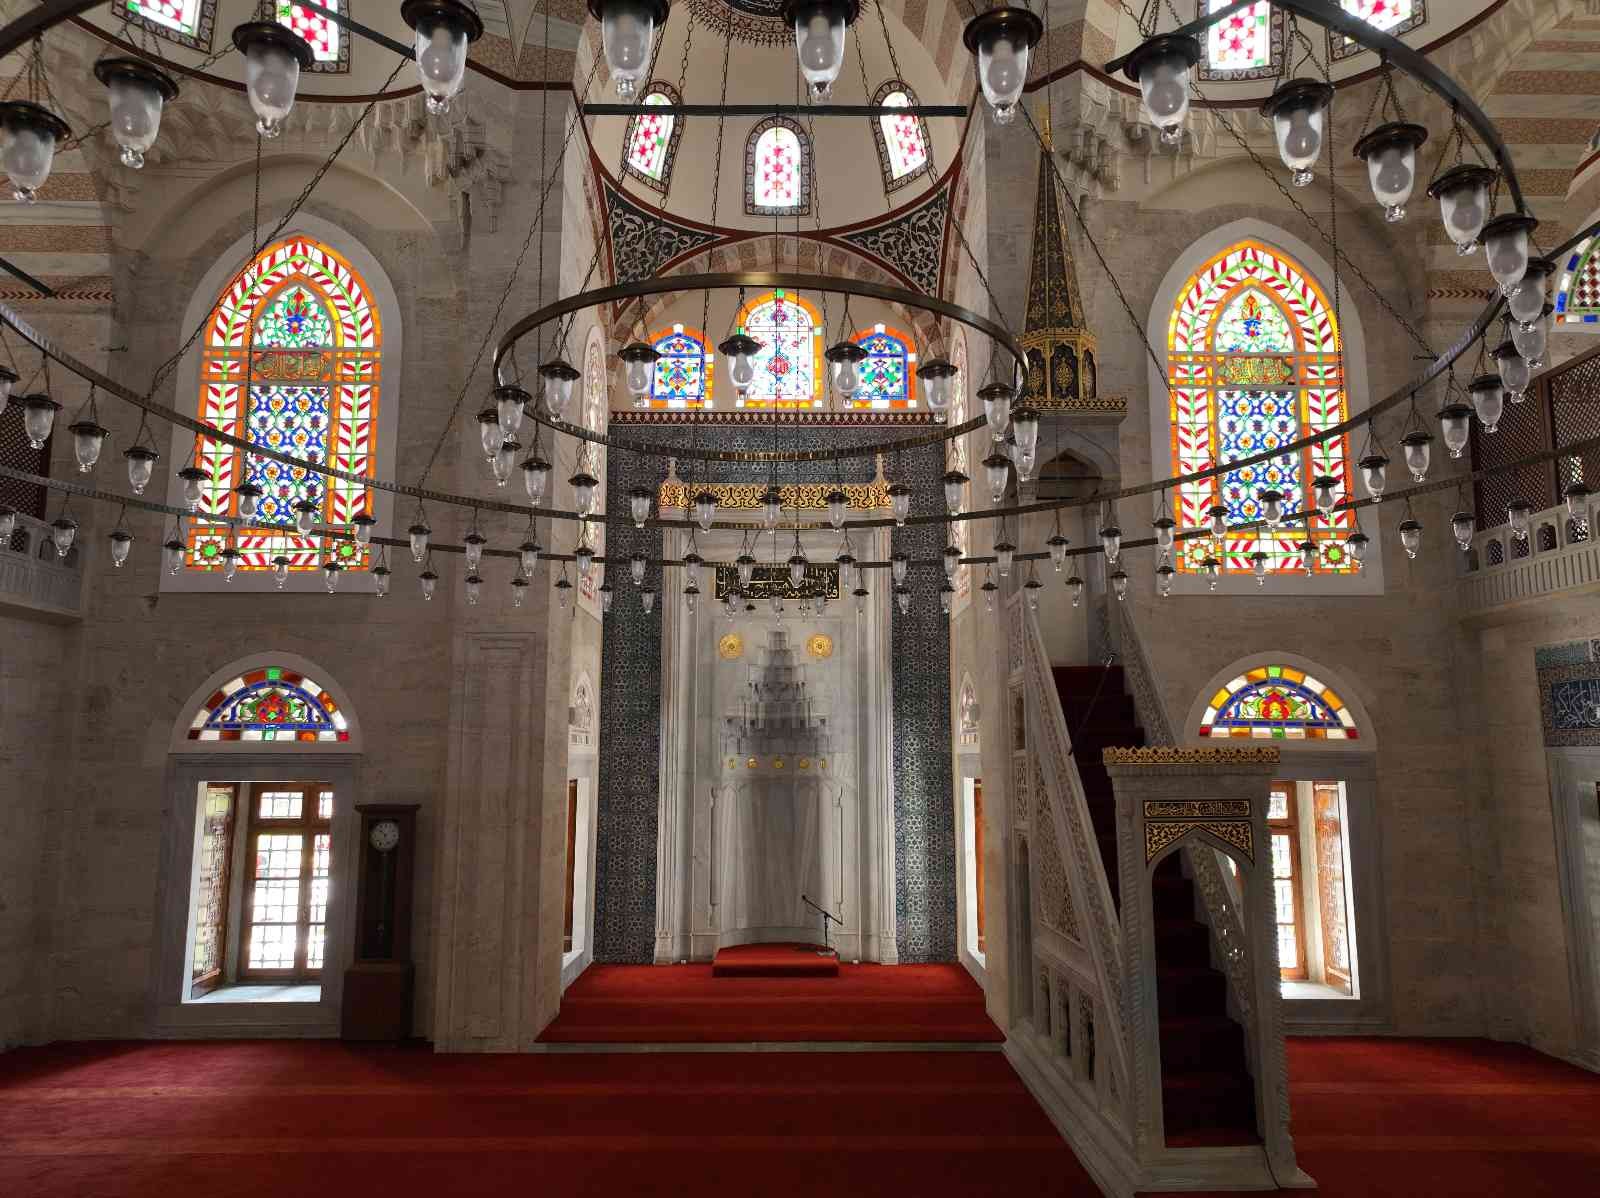 İstanbul’da tarihi yarımadada bulunan Mesih Ali Paşa Camii, 2018 Yılında başlayan restorasyonu 2022 yılında tamamlanarak yeni yüzüne kavuştu ...